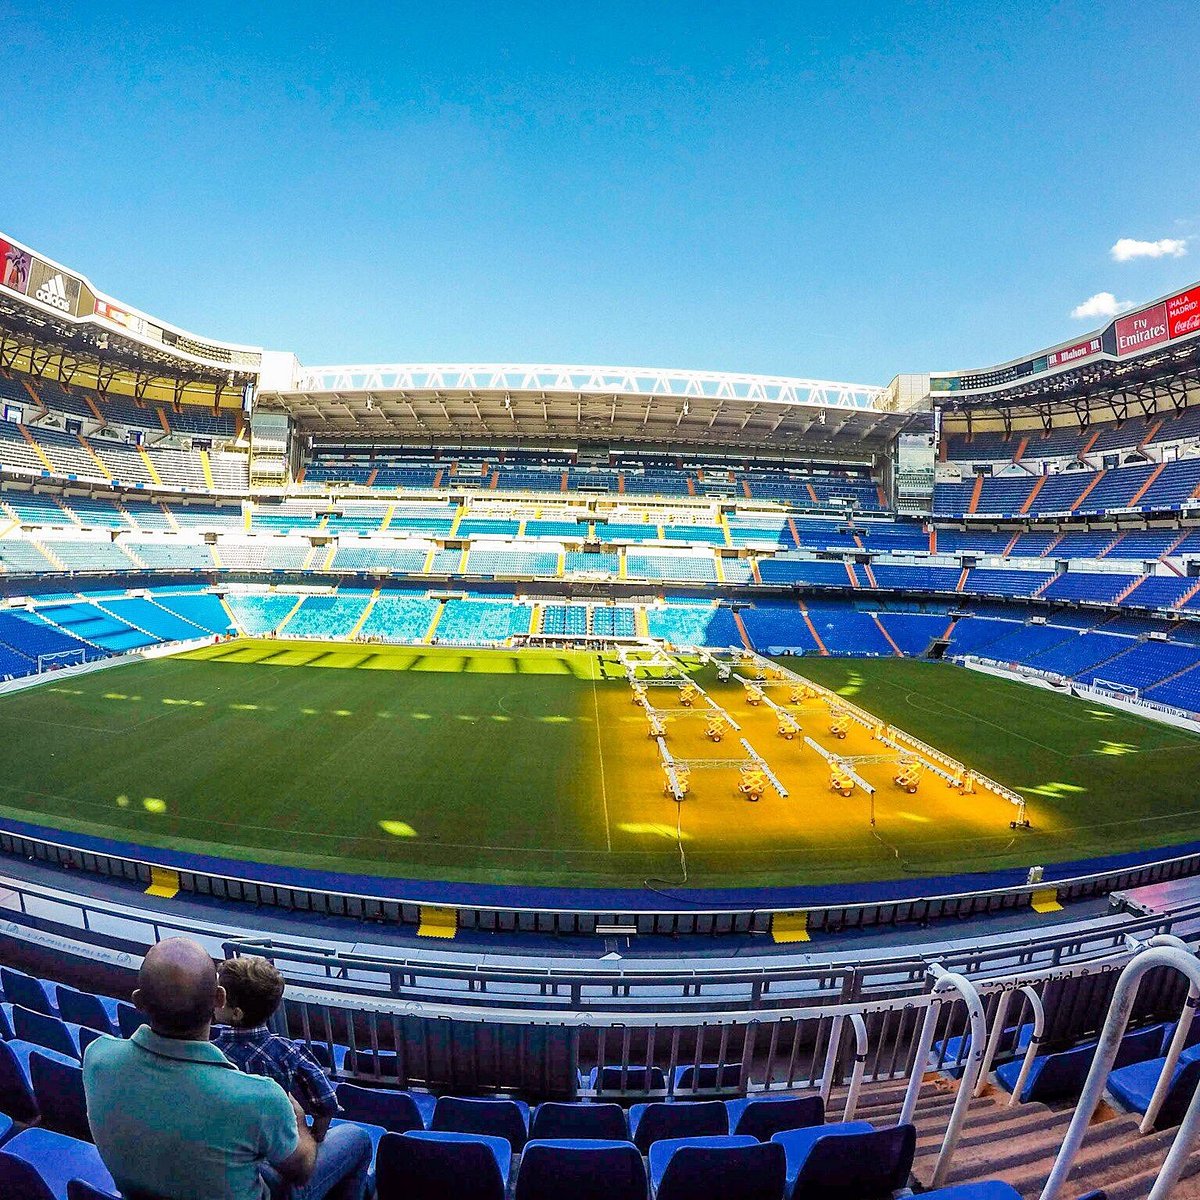 Santiago Bernabéu Stadium Tours - Book Now